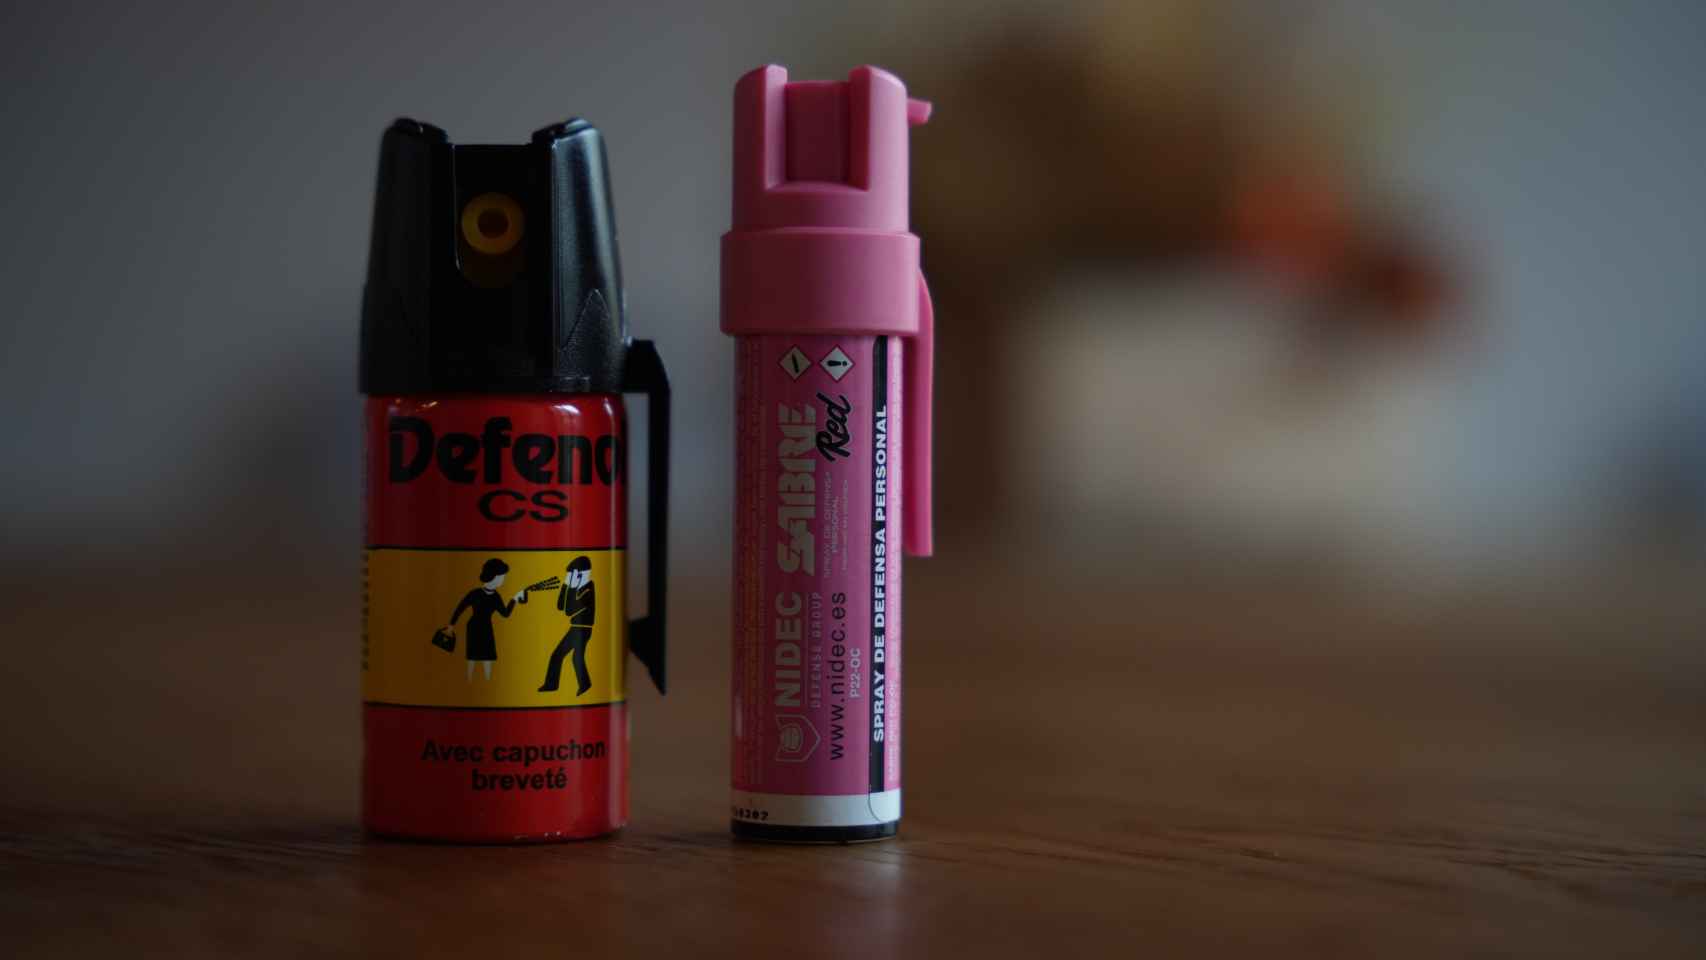 Defensa Personal Spray de pimienta (HOMOLOGADO)